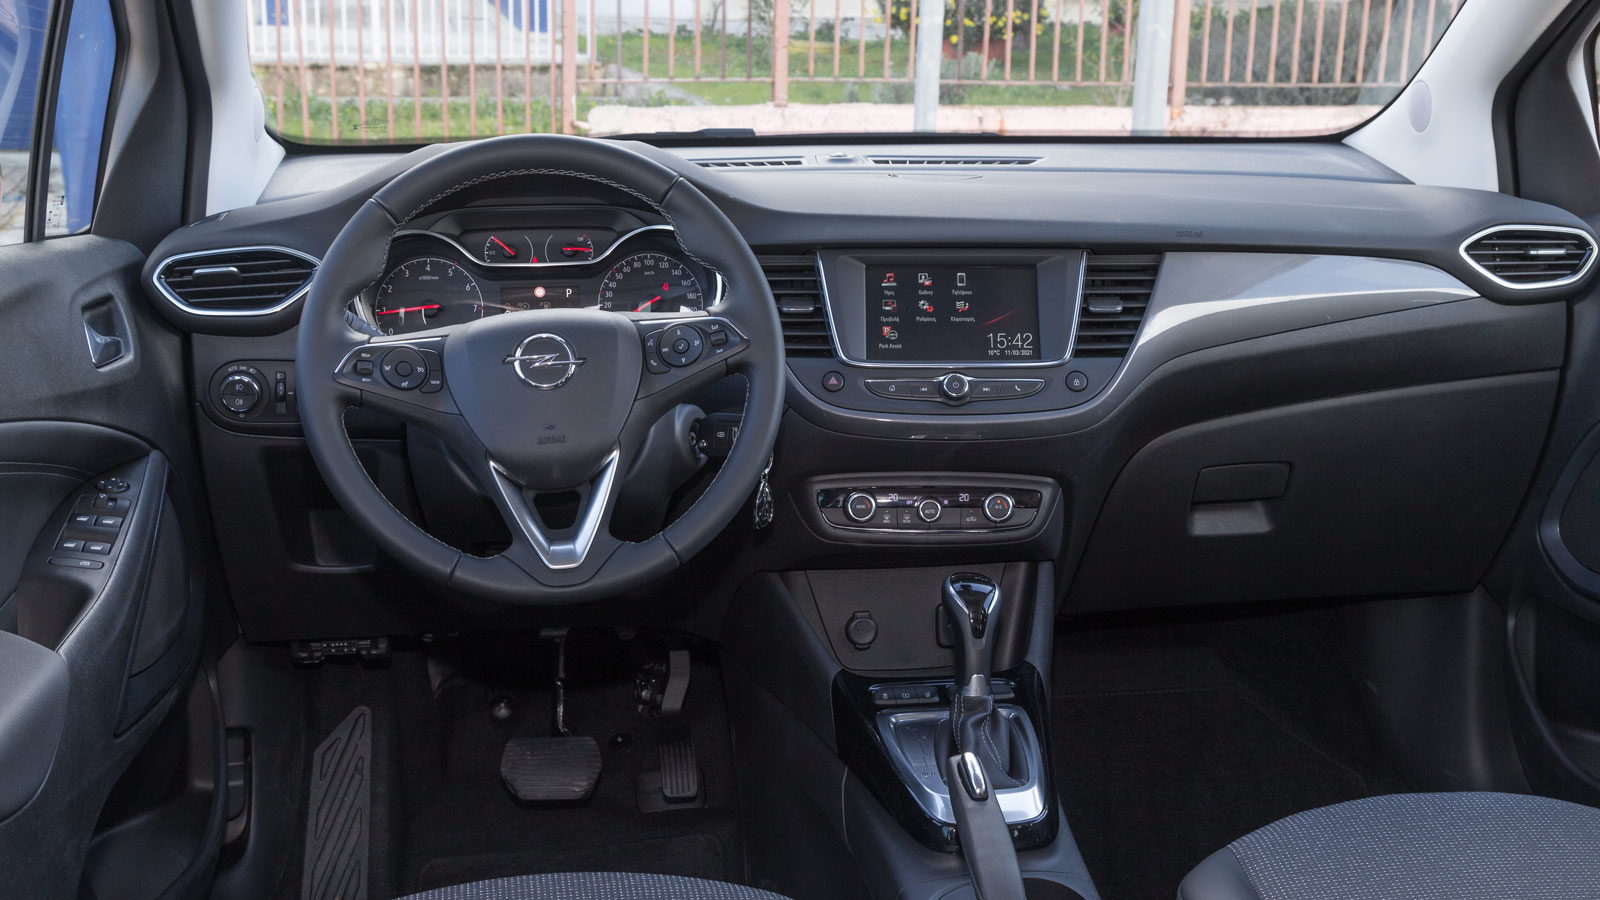 Πρακτικό είναι το εσωτερικό του Opel Crossland, με «έξυπνους» χώρους και αρκετή τεχνολογία